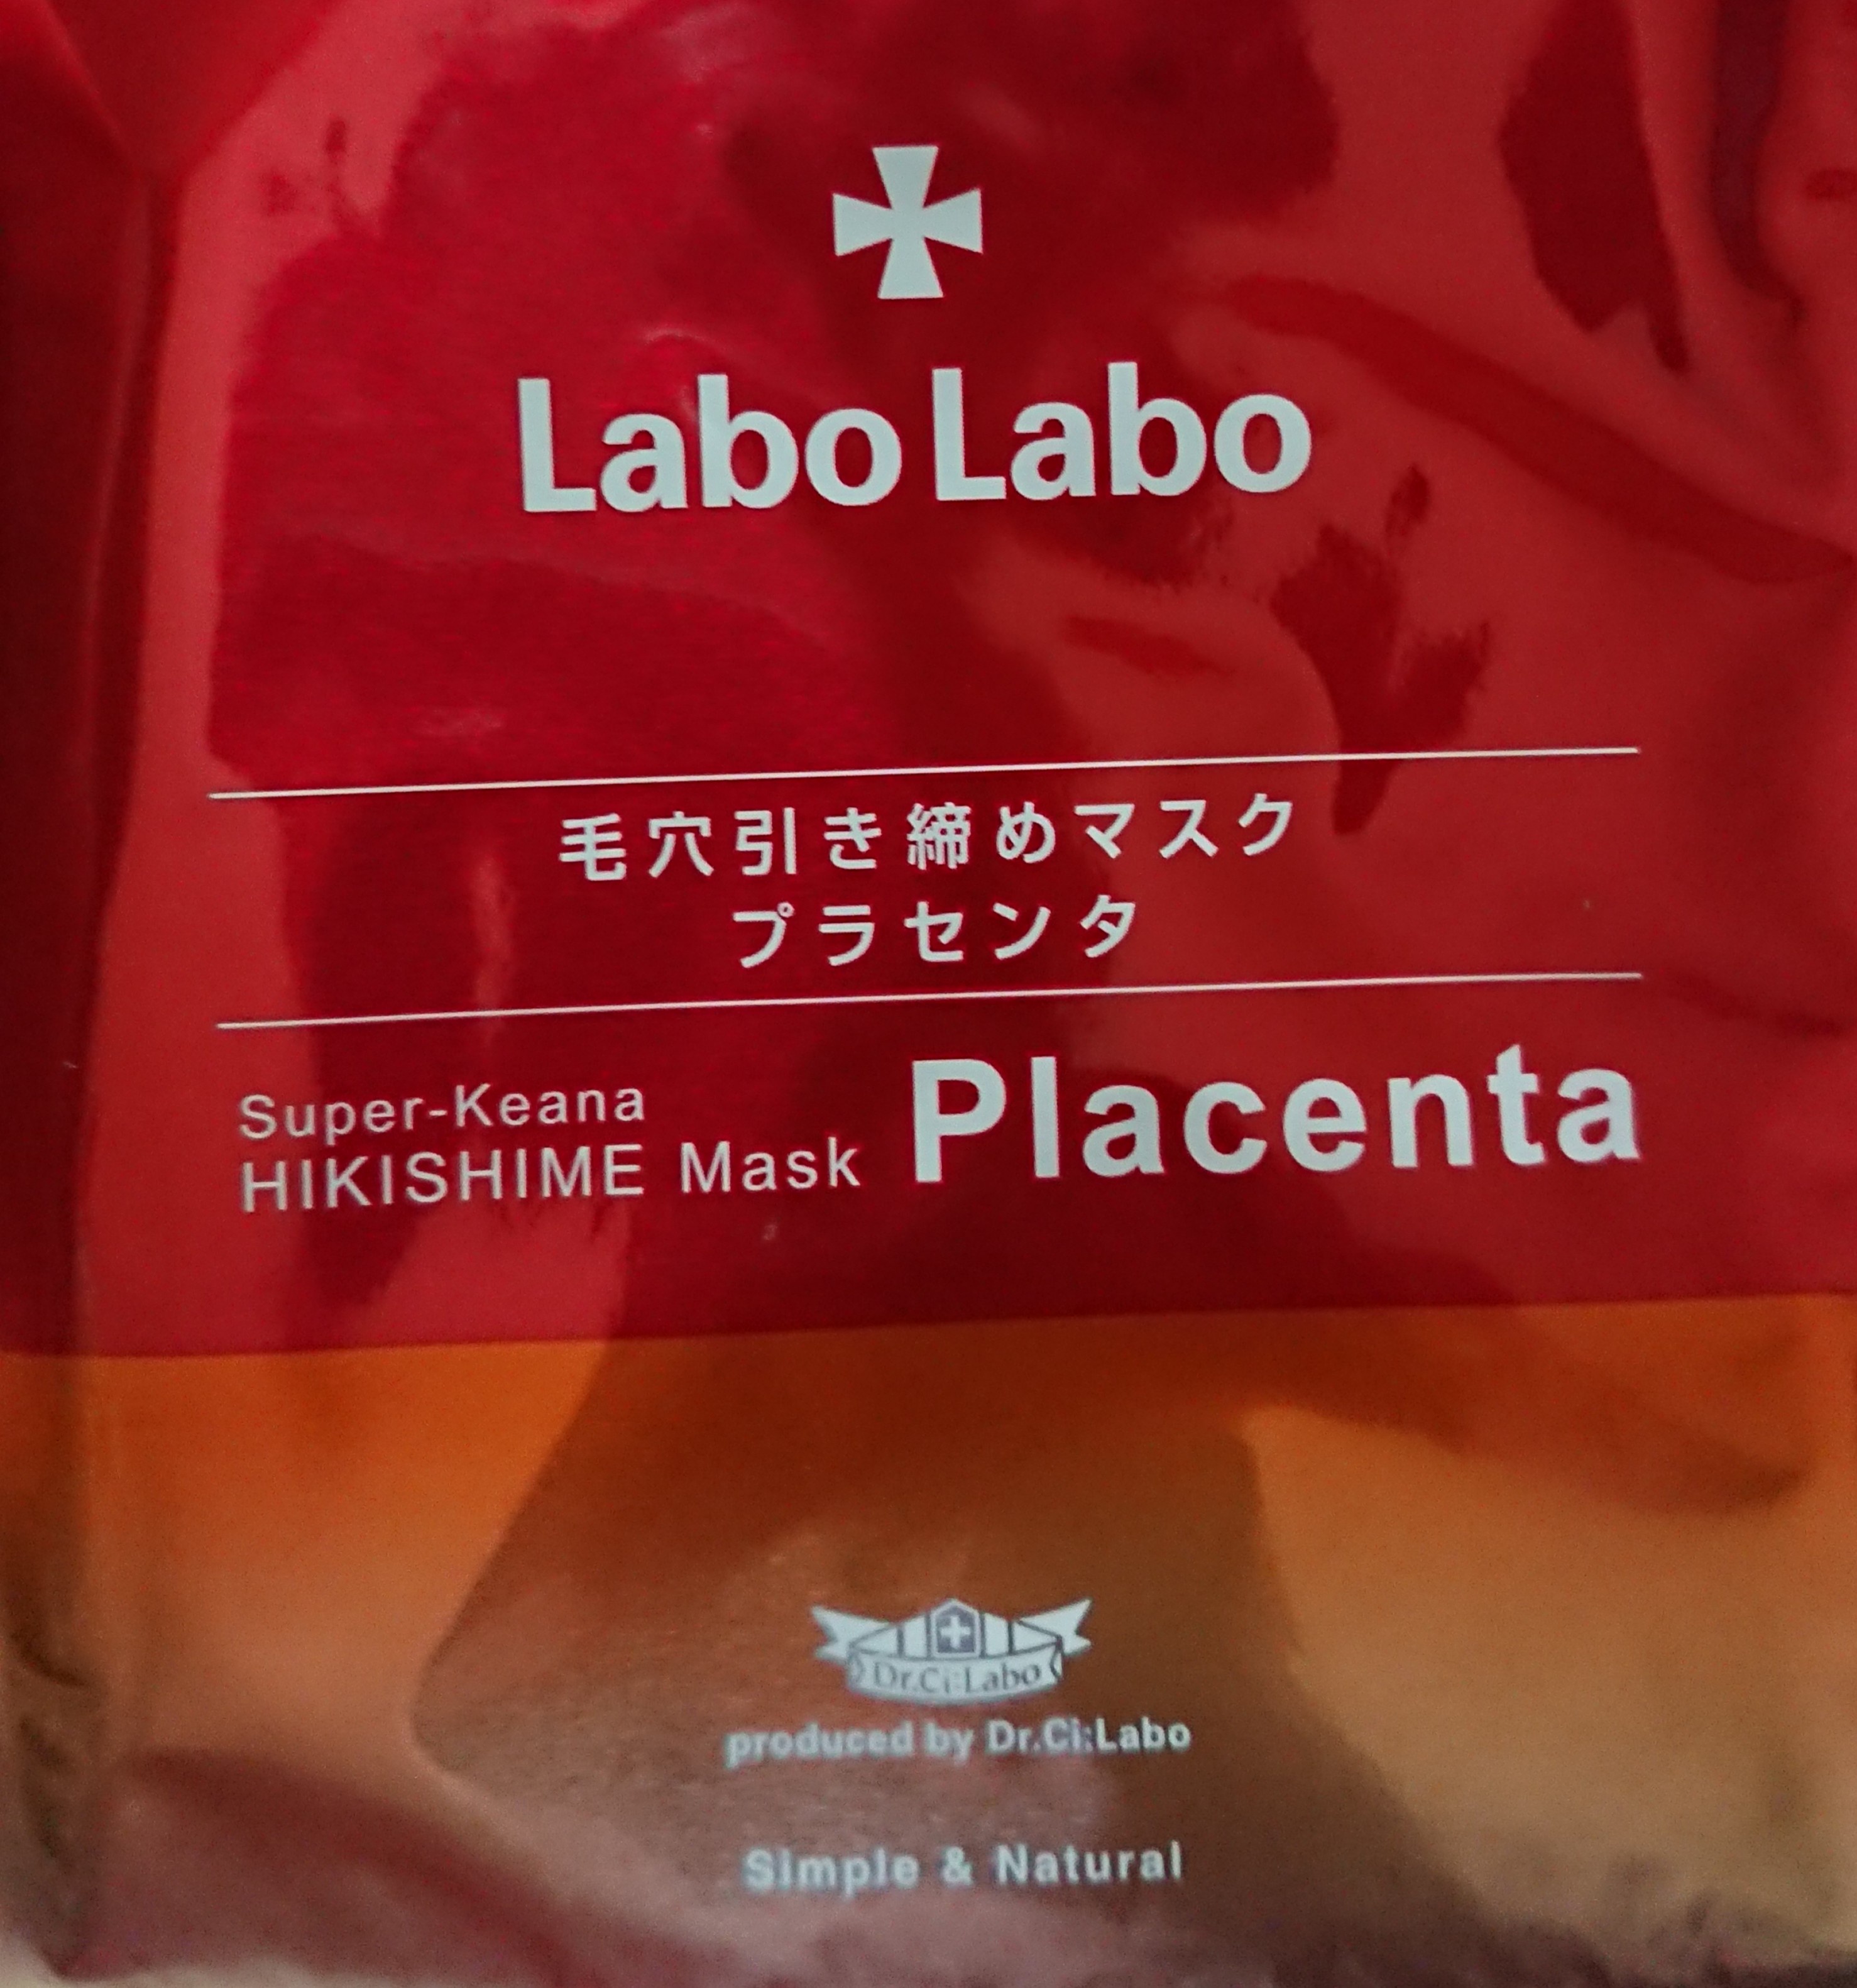 ラボラボ / スーパー毛穴引き締めマスク プラセンタの公式商品